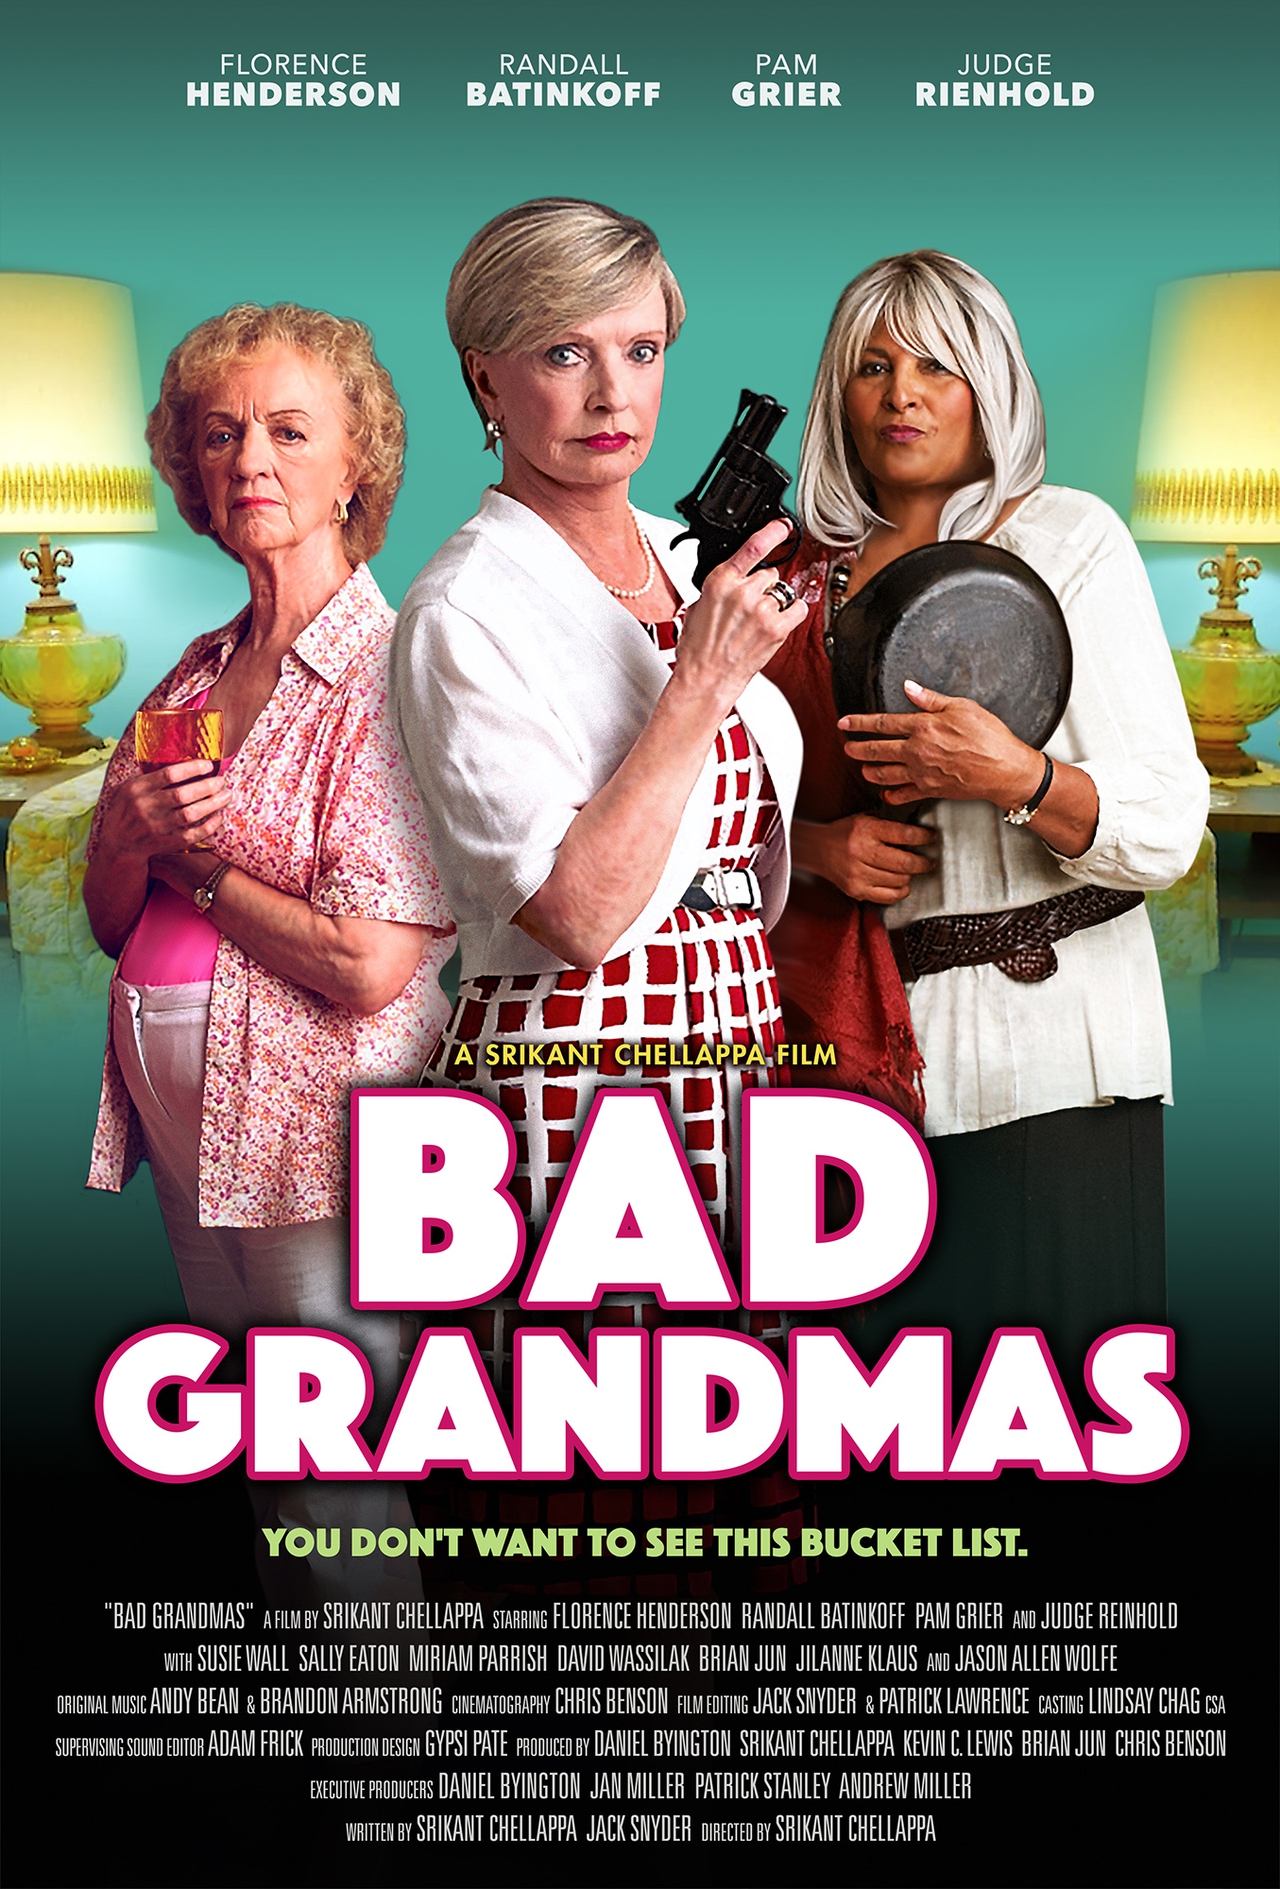 پم گریر در صحنه فیلم سینمایی Bad Grandmas به همراه Florence Henderson